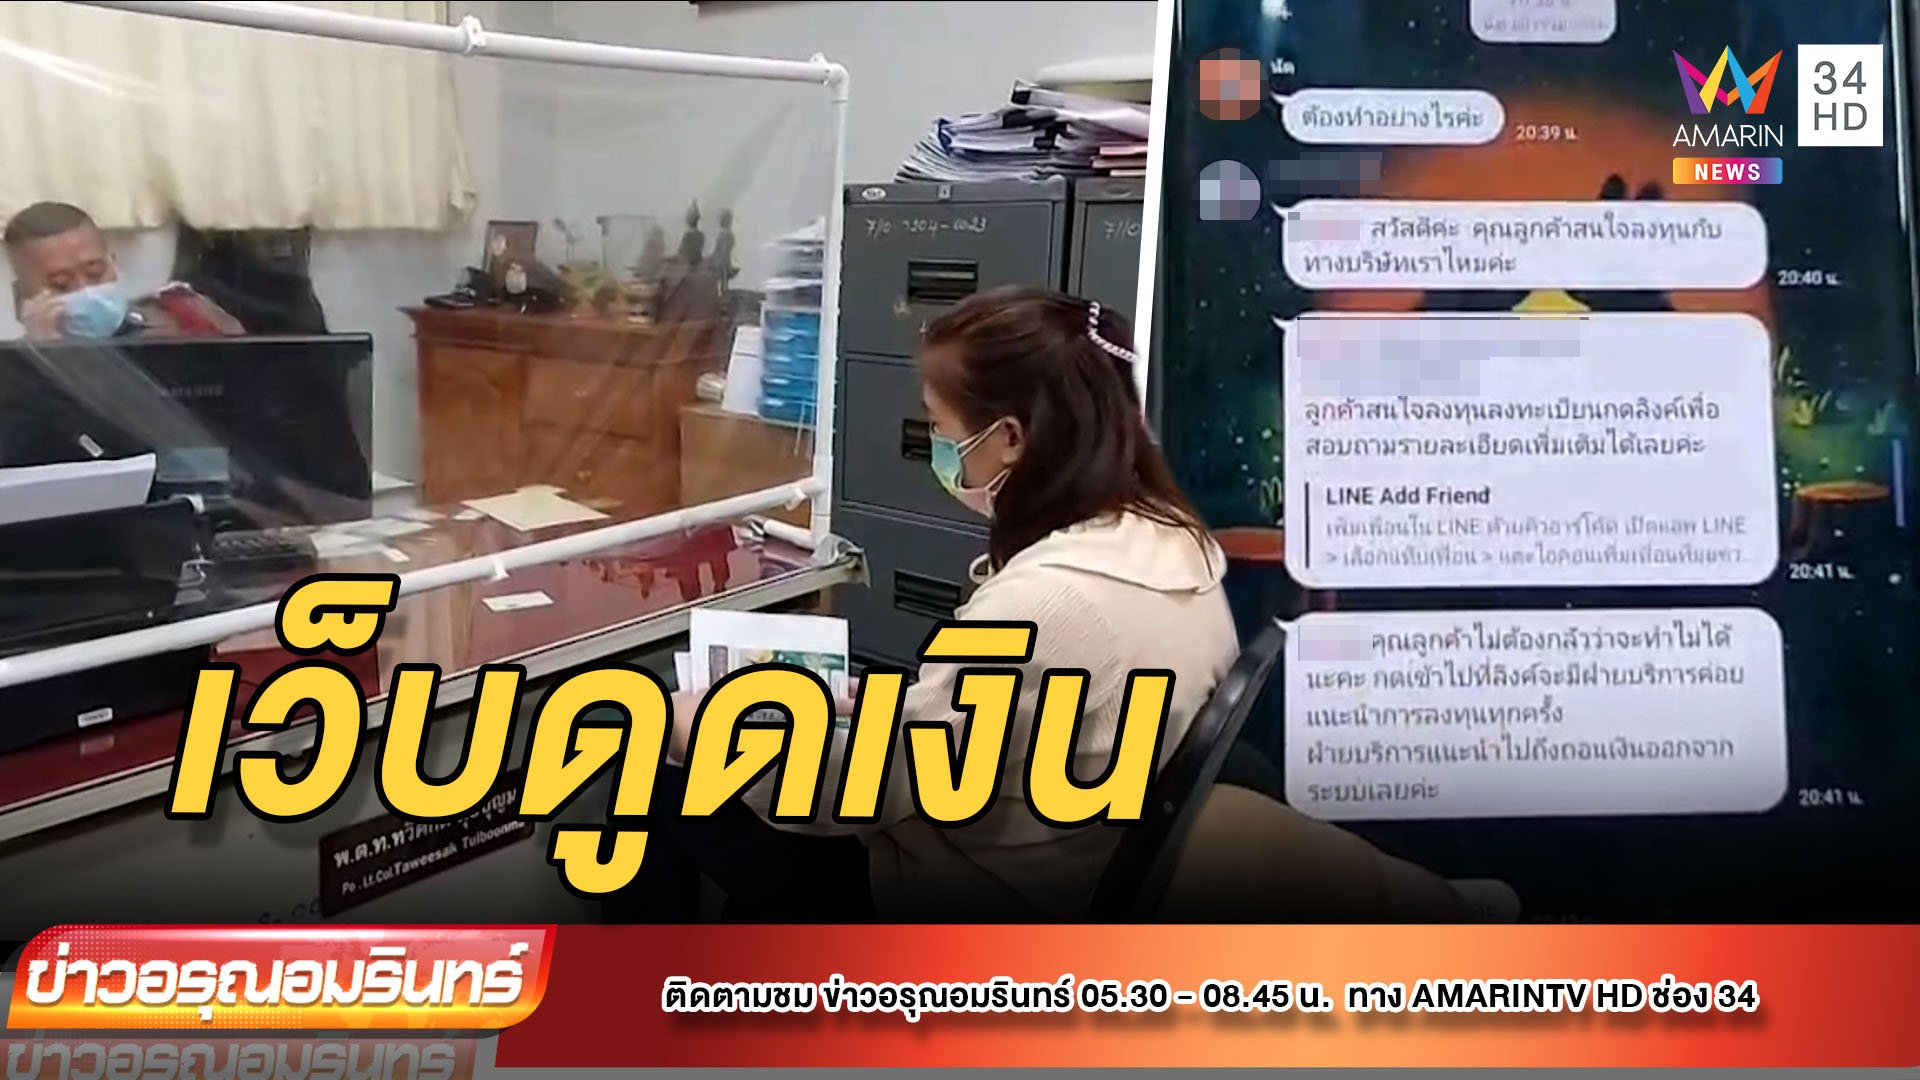 สาวร้านกาแฟเจอดีเว็บหลอกโอนเงินสูญเป็นแสน | ข่าวอรุณอมรินทร์ | 12 พ.ย. 64 | AMARIN TVHD34